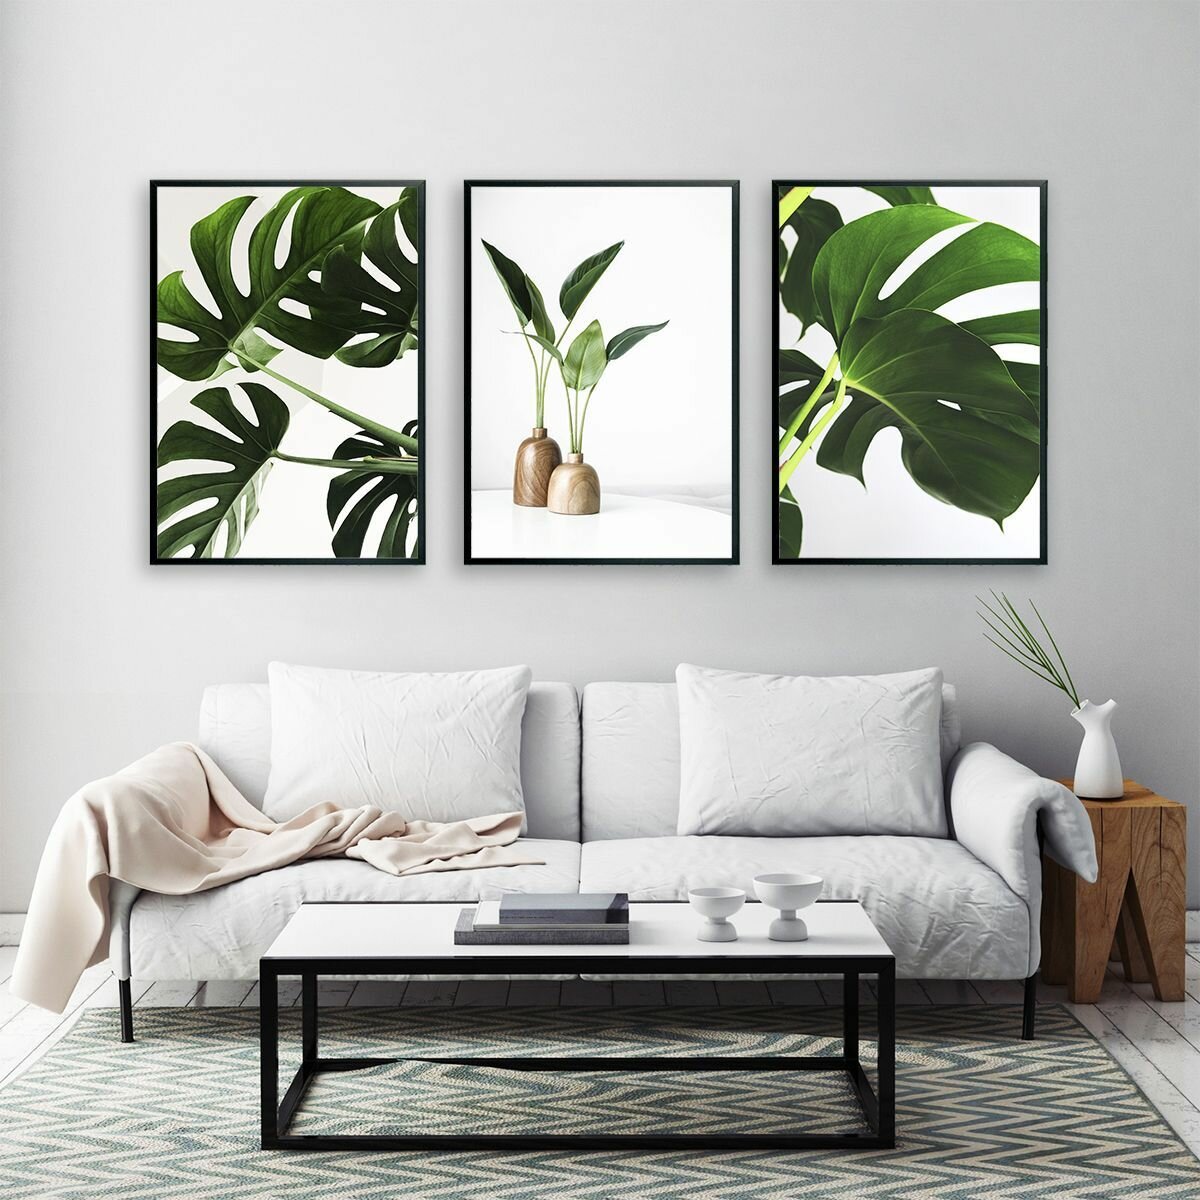 Постеры для интерьера "Зеленые листья природы", постеры на стену 30х40 см, 3 шт.